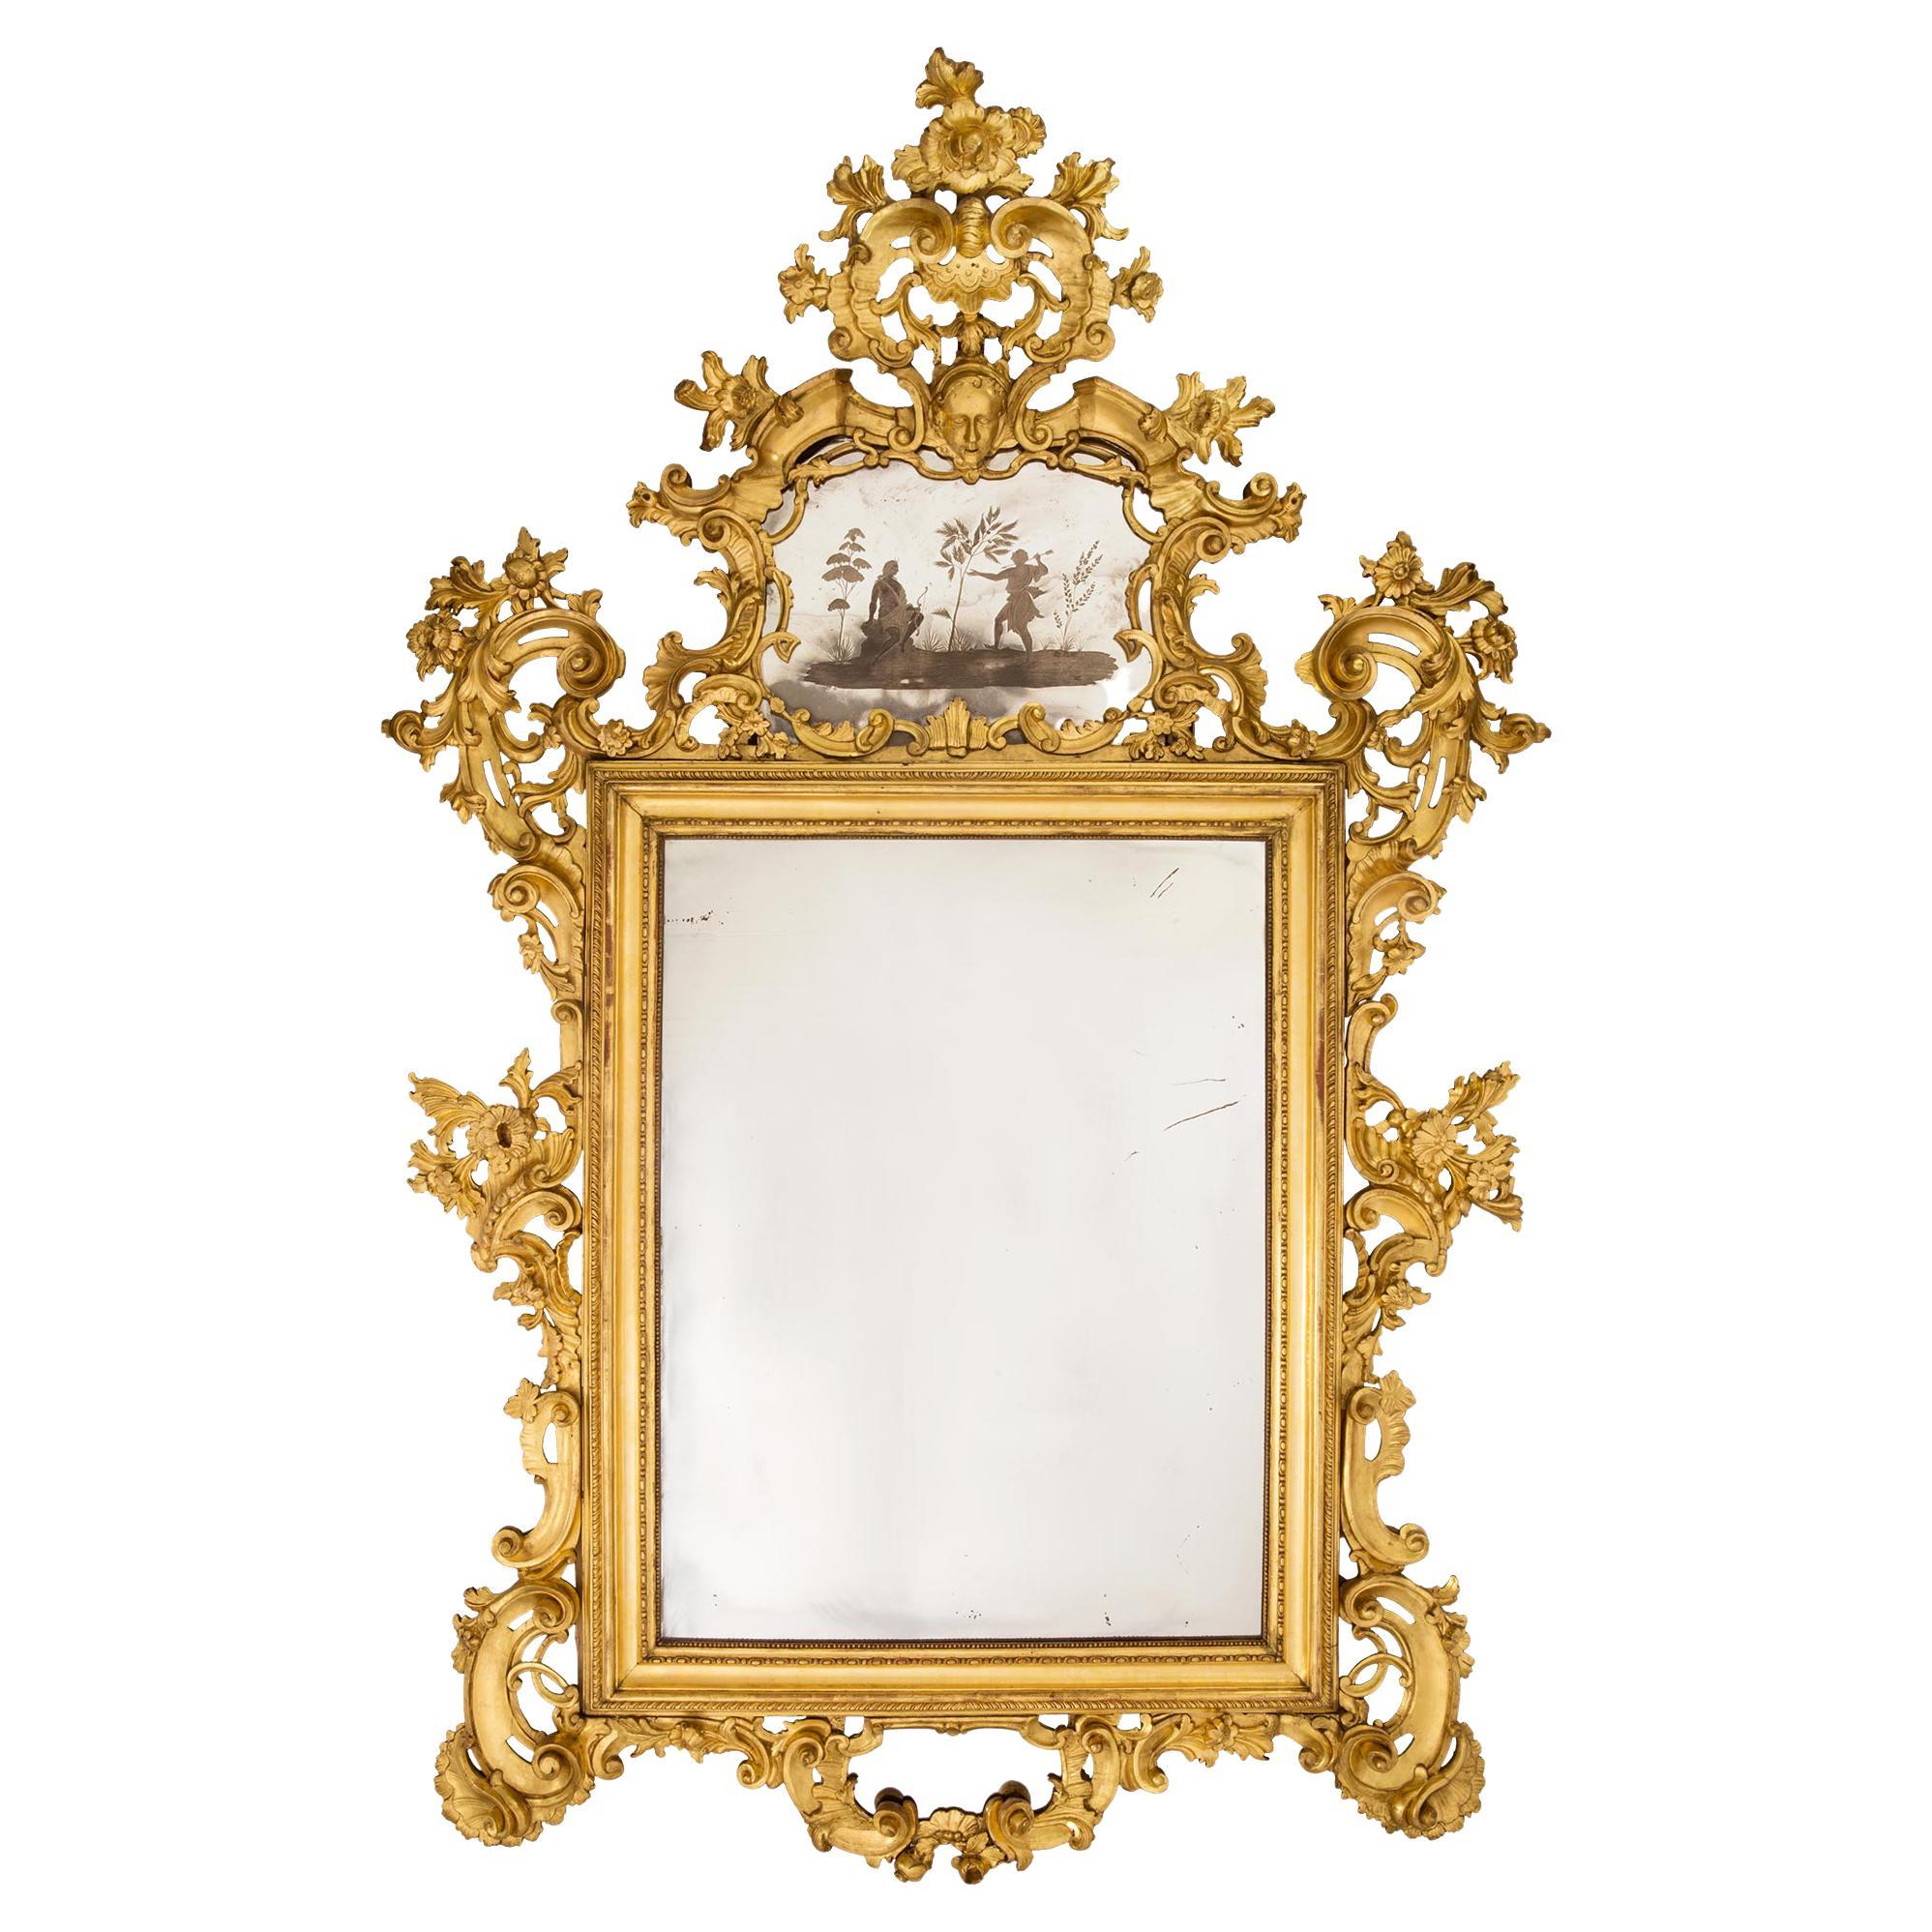 Miroir vénitien italien en bois doré du XVIIIe siècle